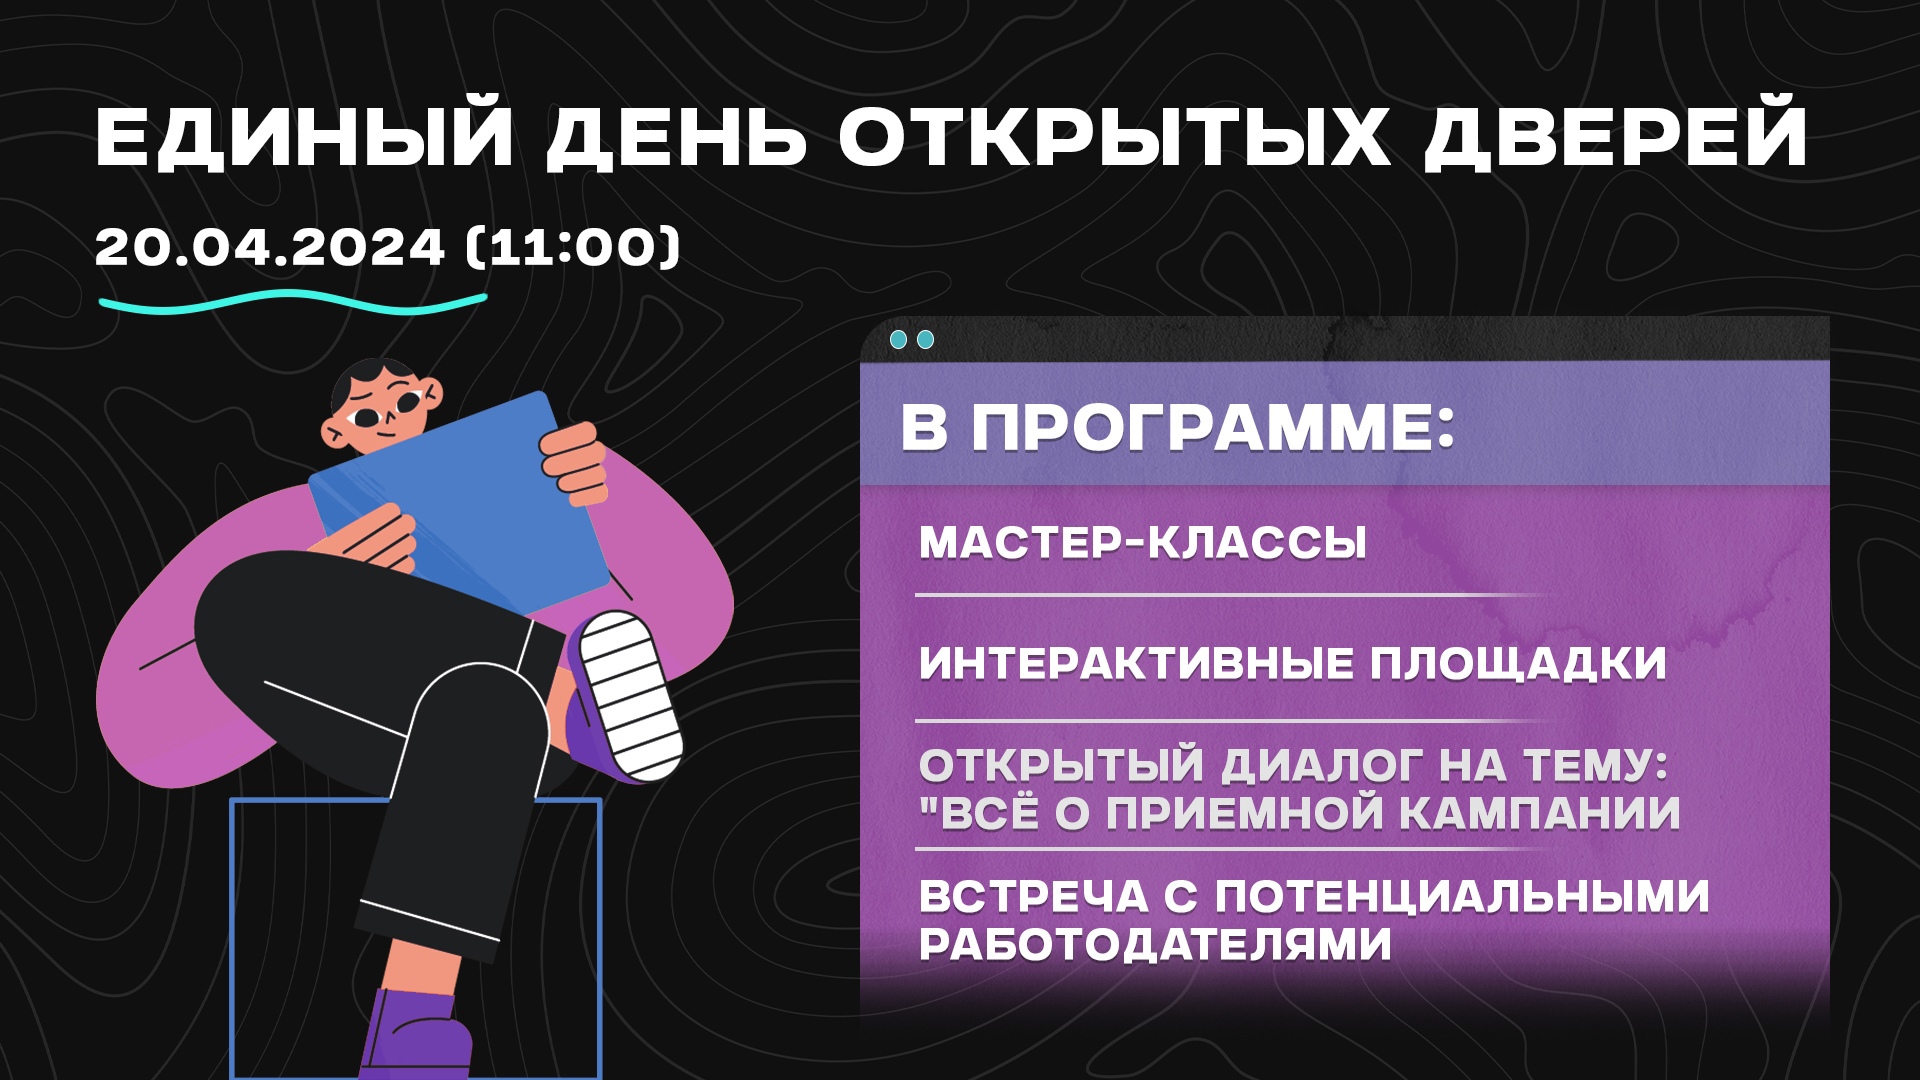 В СПб ГБ ПОУ «Радиотехнический колледж» 20.04.2024 в 11:00 состоится Единый день открытых дверей